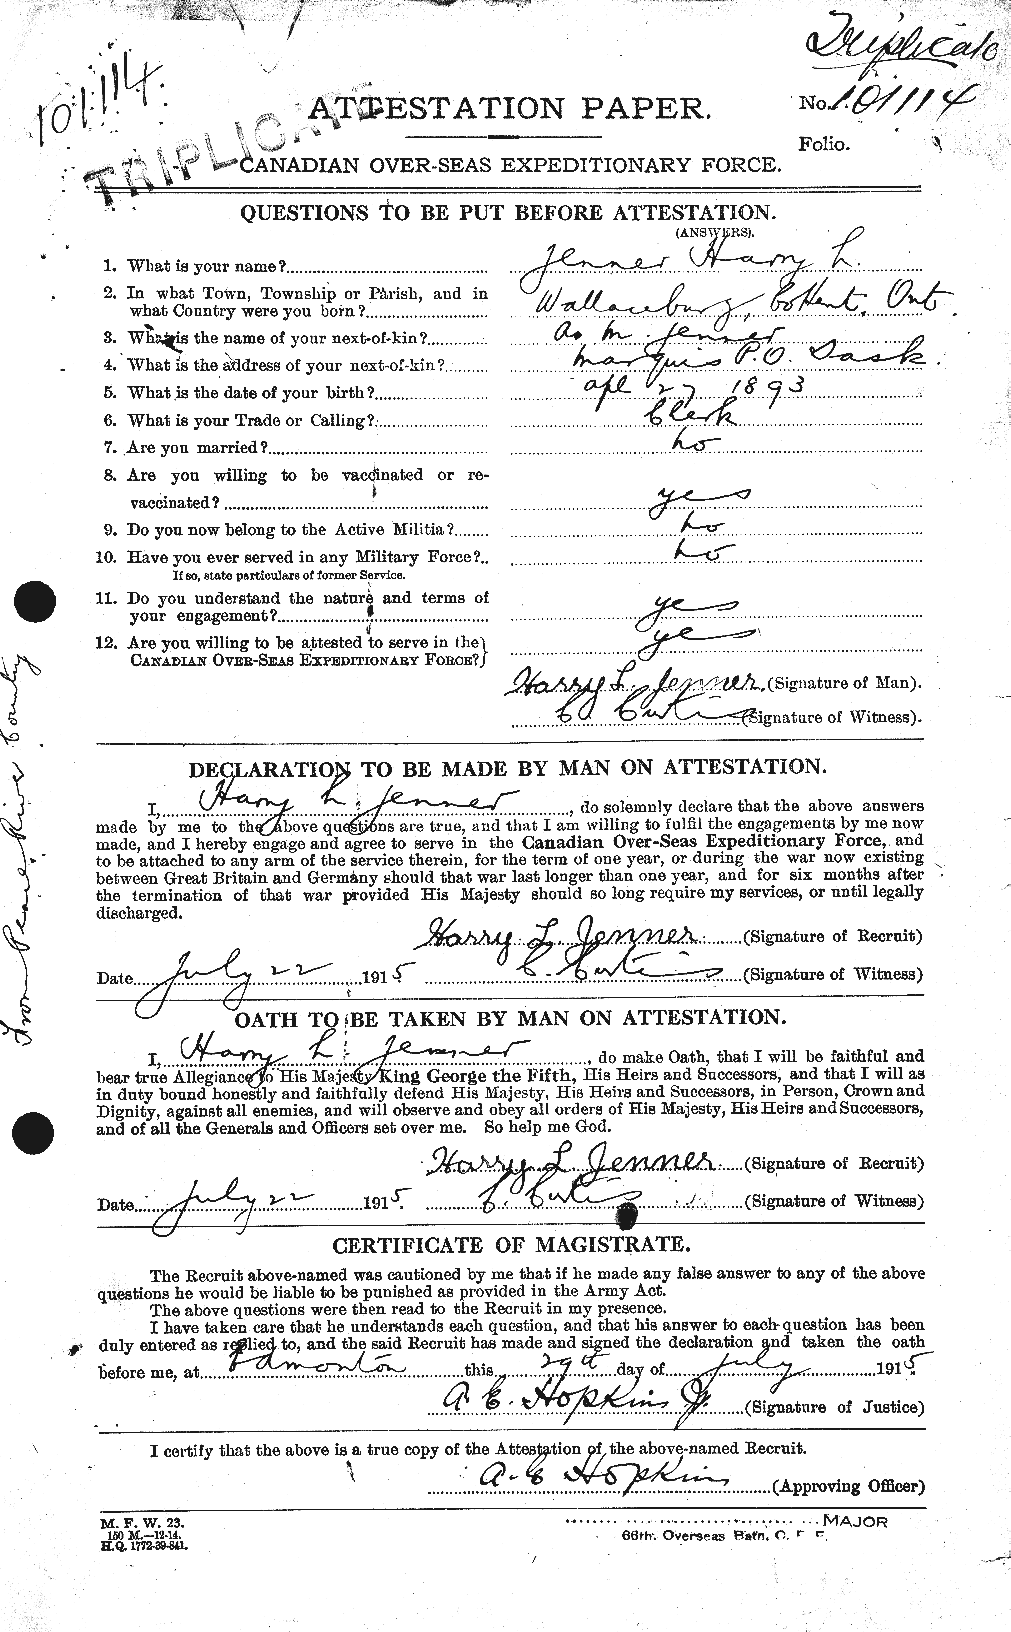 Dossiers du Personnel de la Première Guerre mondiale - CEC 418165a